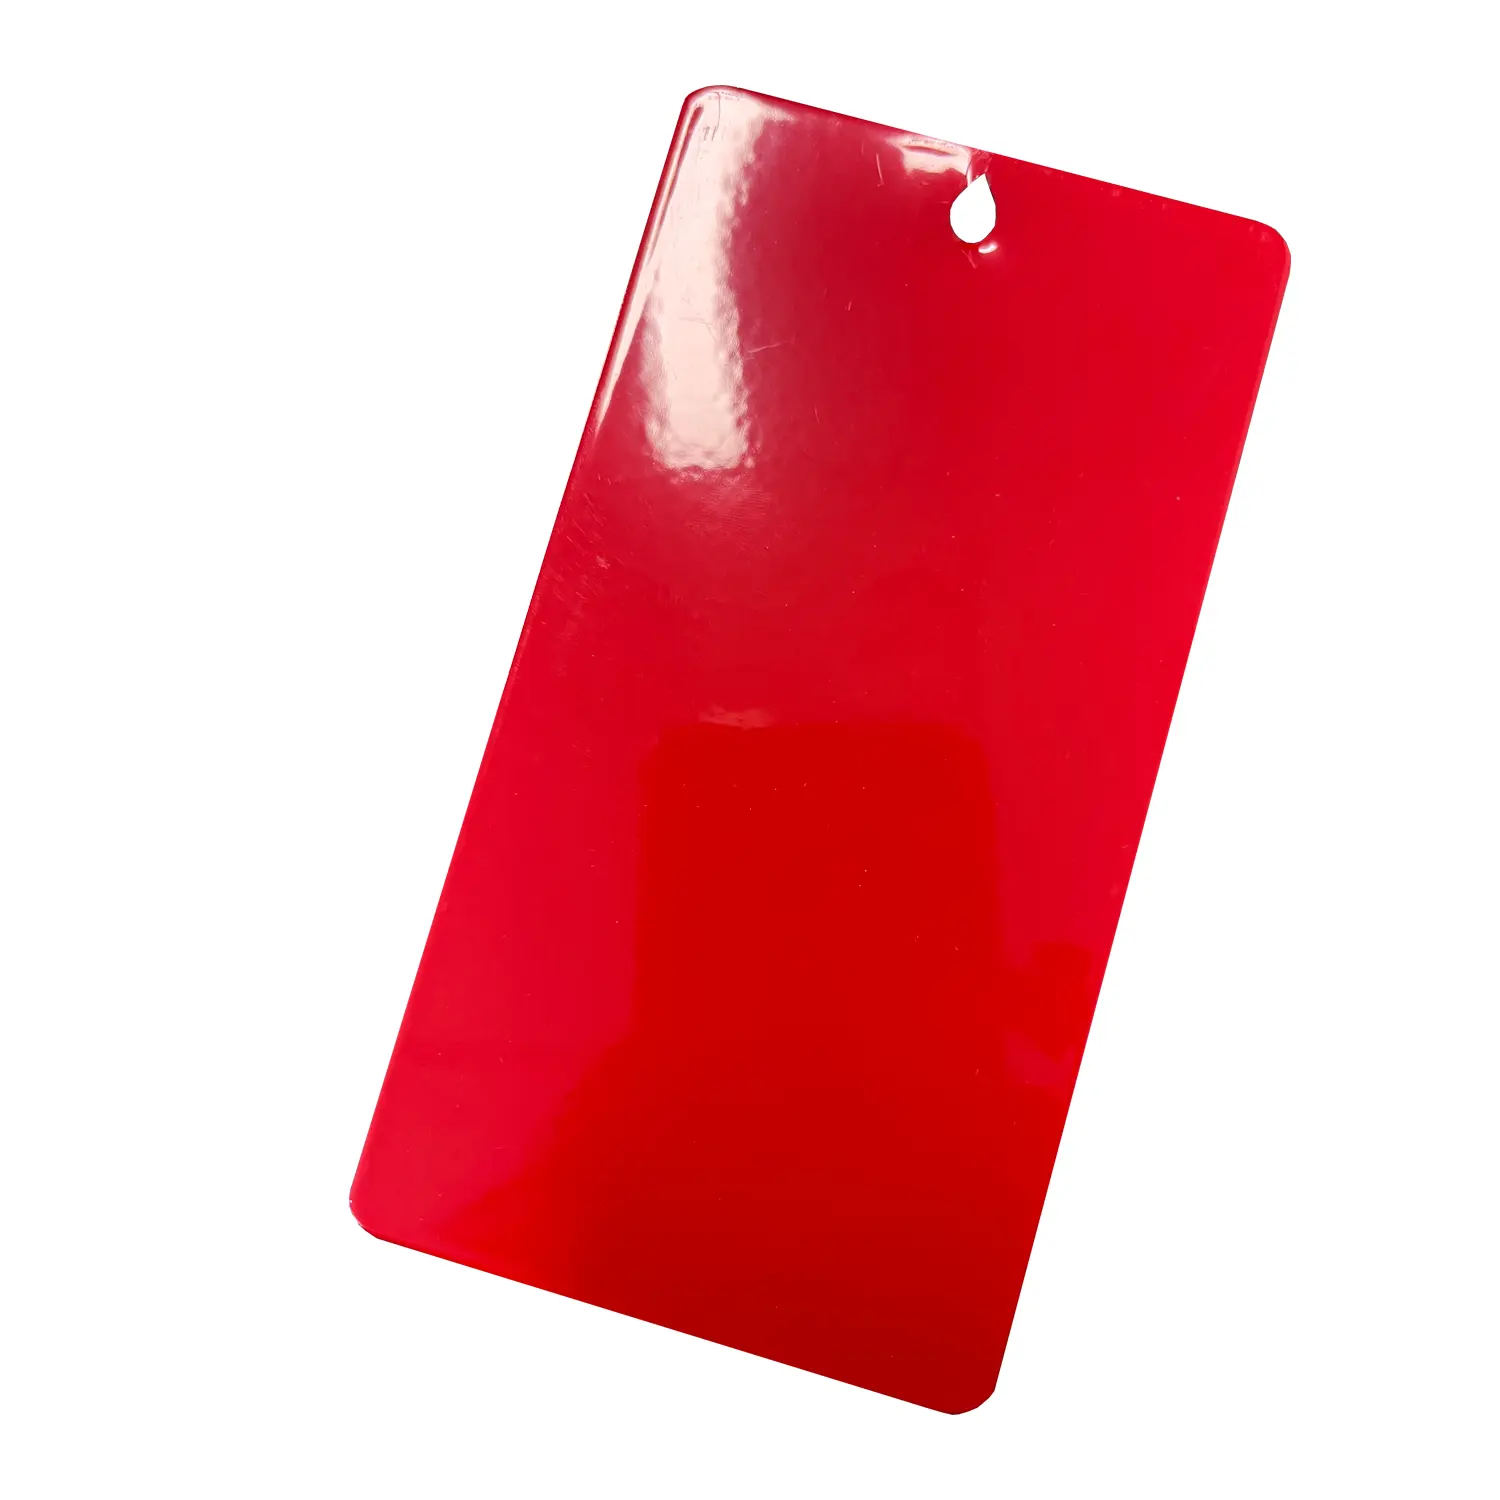 Pintura de recubrimiento en polvo de poliéster rojo para armarios contra incendios, pintura de resistencia UV Ral 3020